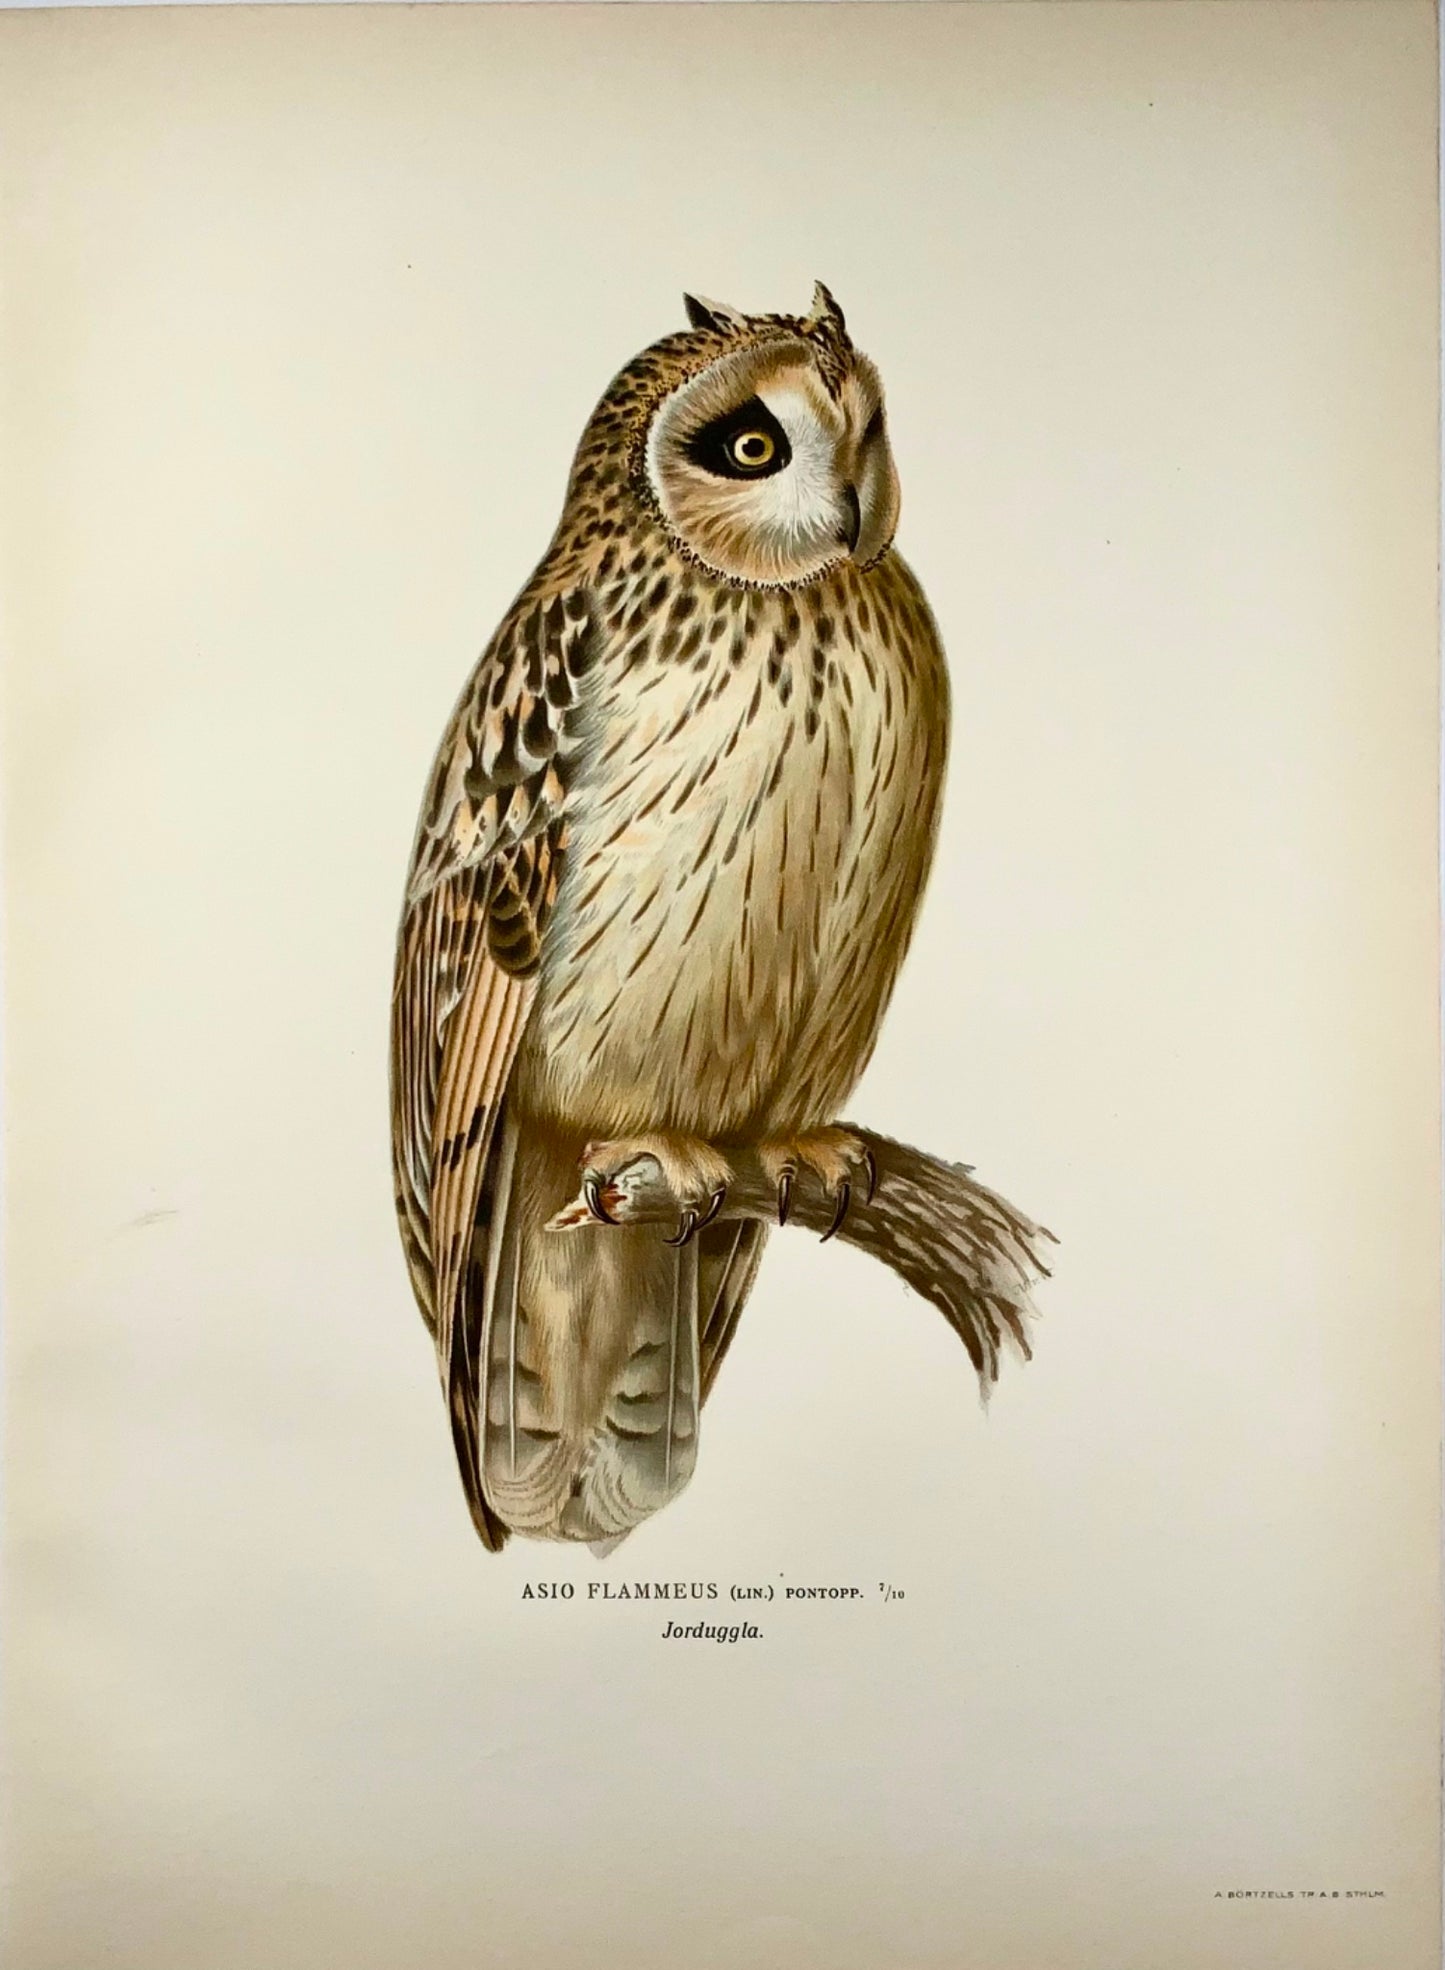 1918 Von Wright, Hibou des marais, grande lithographie in-folio, ornithologie